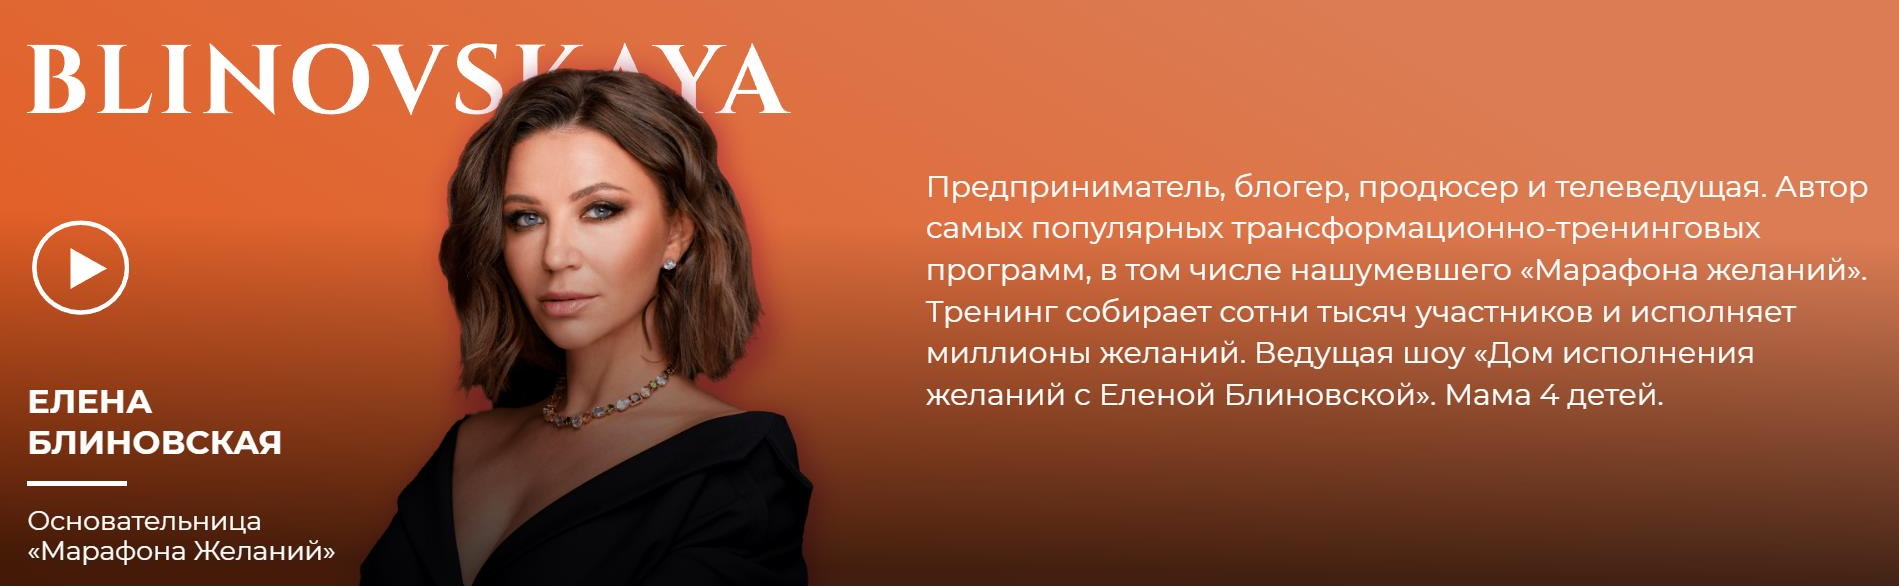 Инфоцыганка Елена Блиновская отстала от табора в особо крупных размерах:  блогера-миллионницу задержали за неуплату налогов на миллиард — ADPASS